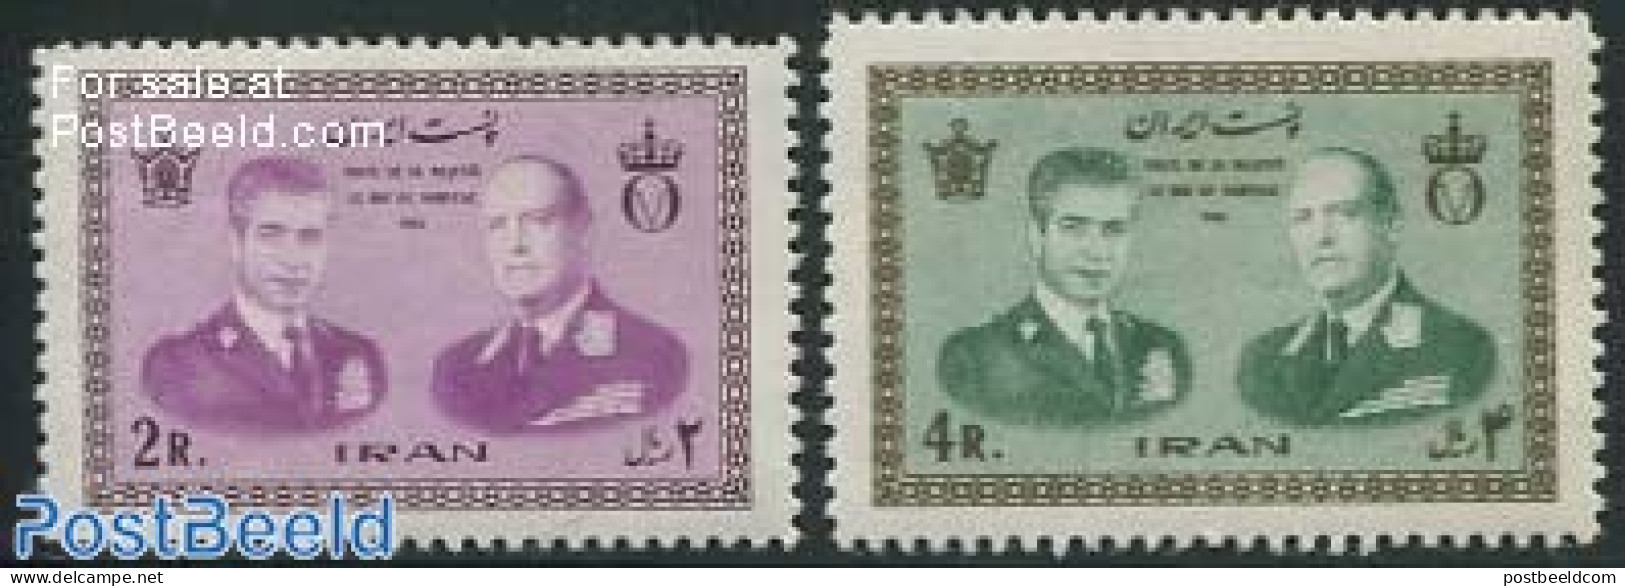 Iran/Persia 1965 Visit Of King Olav V From Norway 2v             B, Mint NH, History - Kings & Queens (Royalty) - Königshäuser, Adel